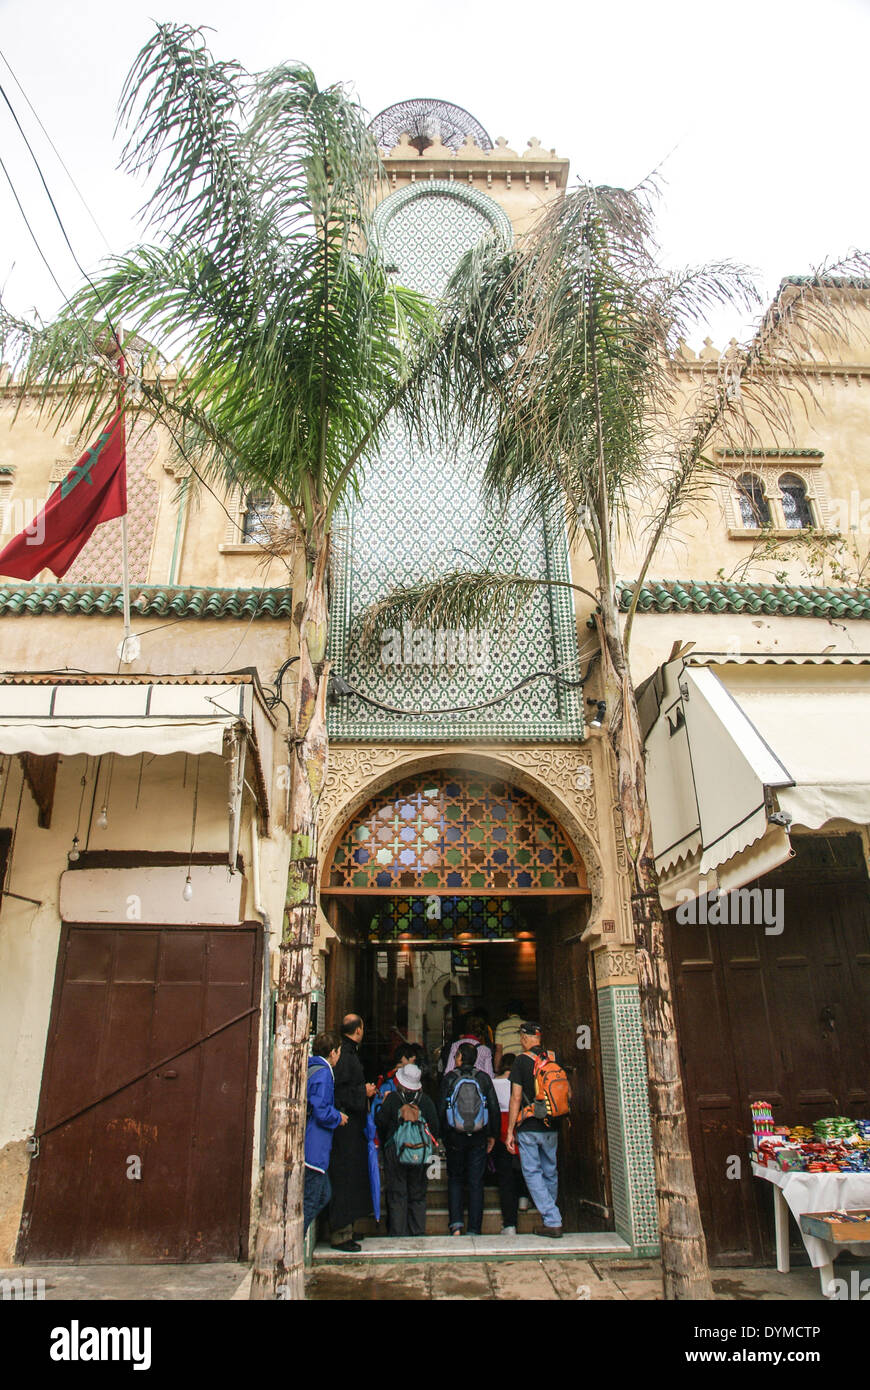 El barrio judío o Mellah en Fes, Marruecos Foto de stock